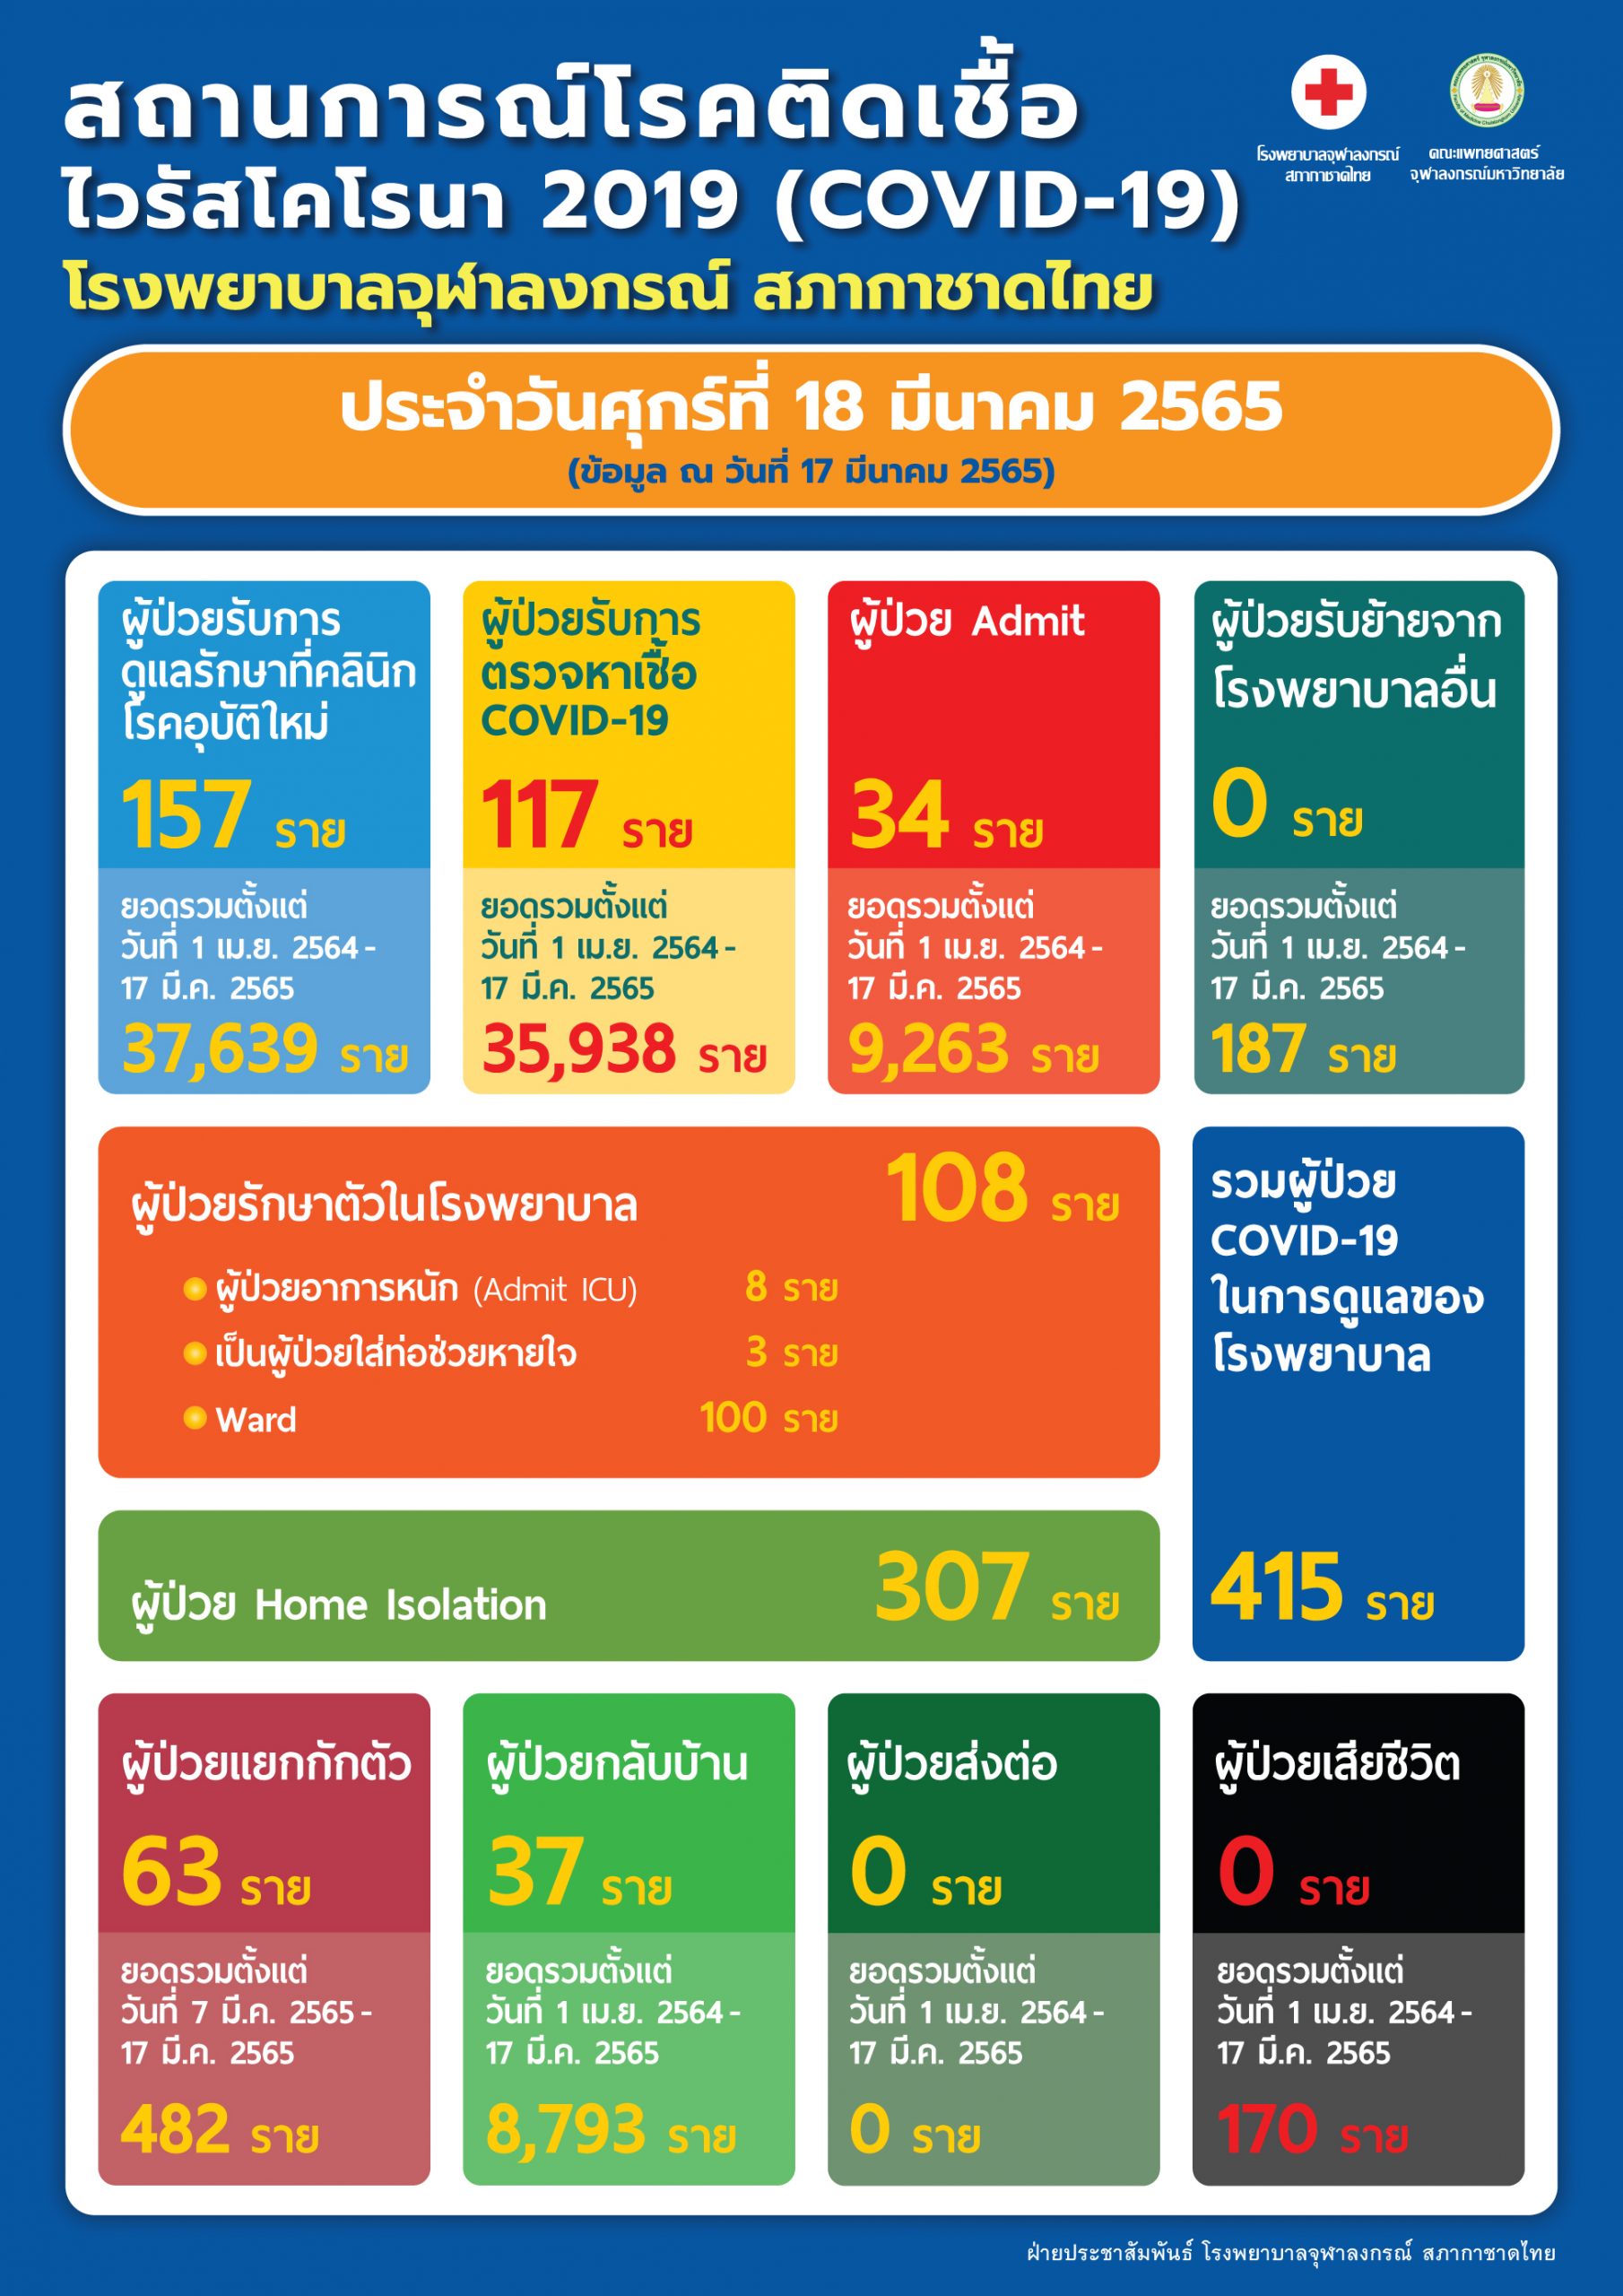 สถานการณ์โรคติดเชื้อไวรัสโคโรนา 2019 (COVID-19) โรงพยาบาลจุฬาลงกรณ์ สภากาชาดไทย ประจำวันศุกร์ที่ 18 มีนาคม 2565